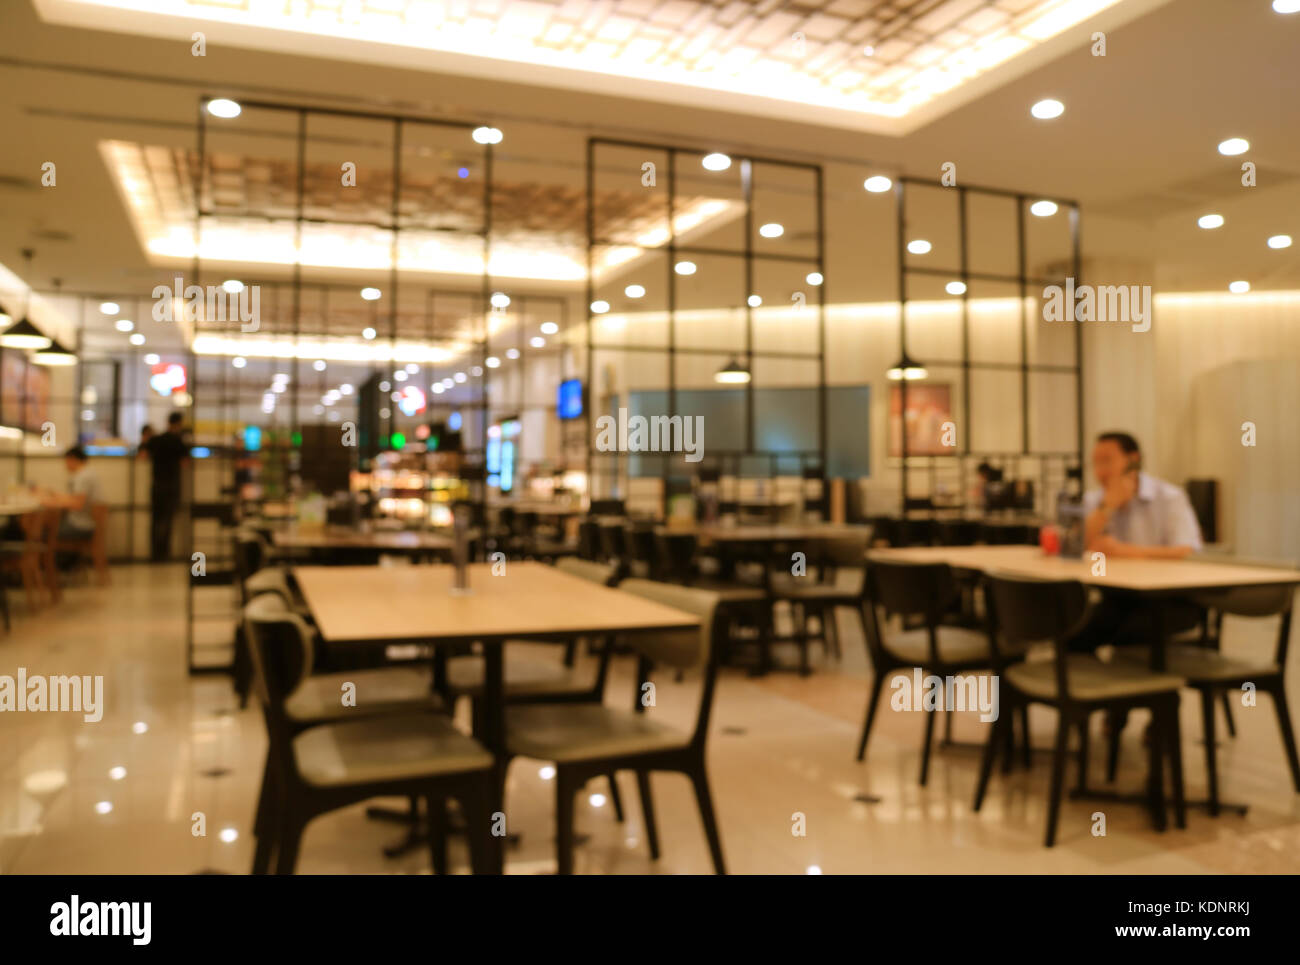 Sfocata stile moderno interno di un ristorante cafe in beige e nero con molti lighting Foto Stock